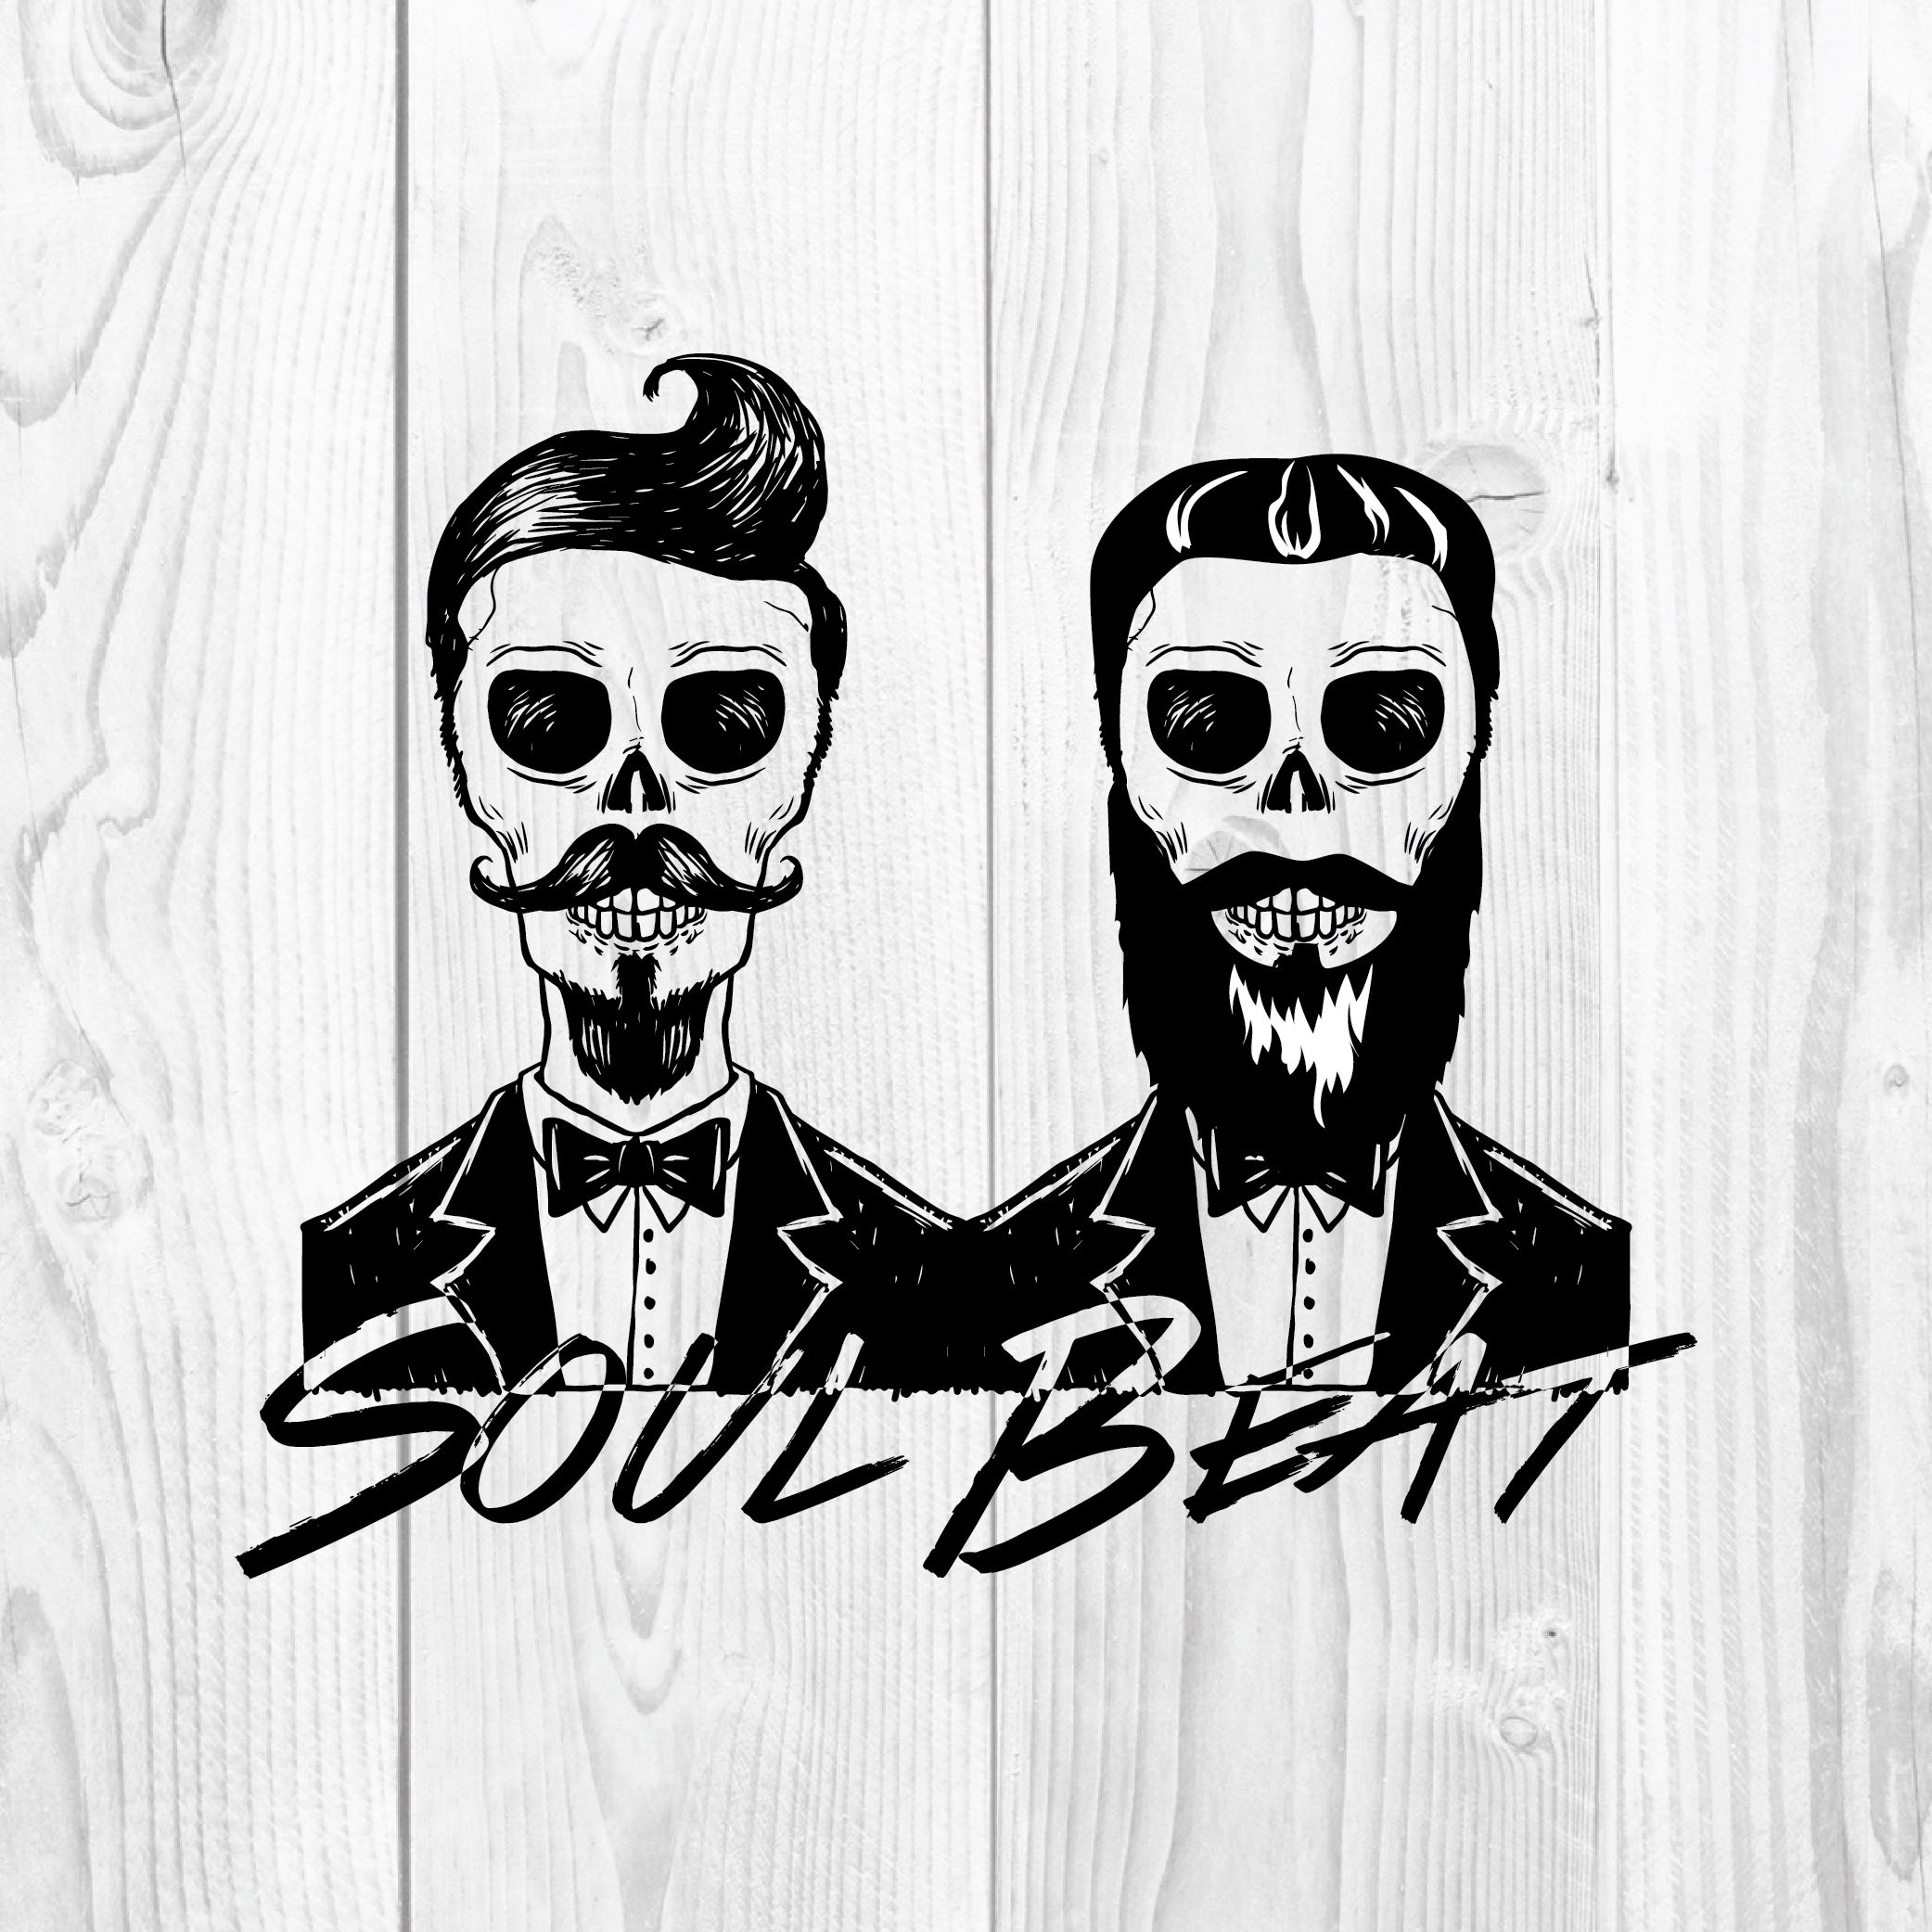 Soul Beat